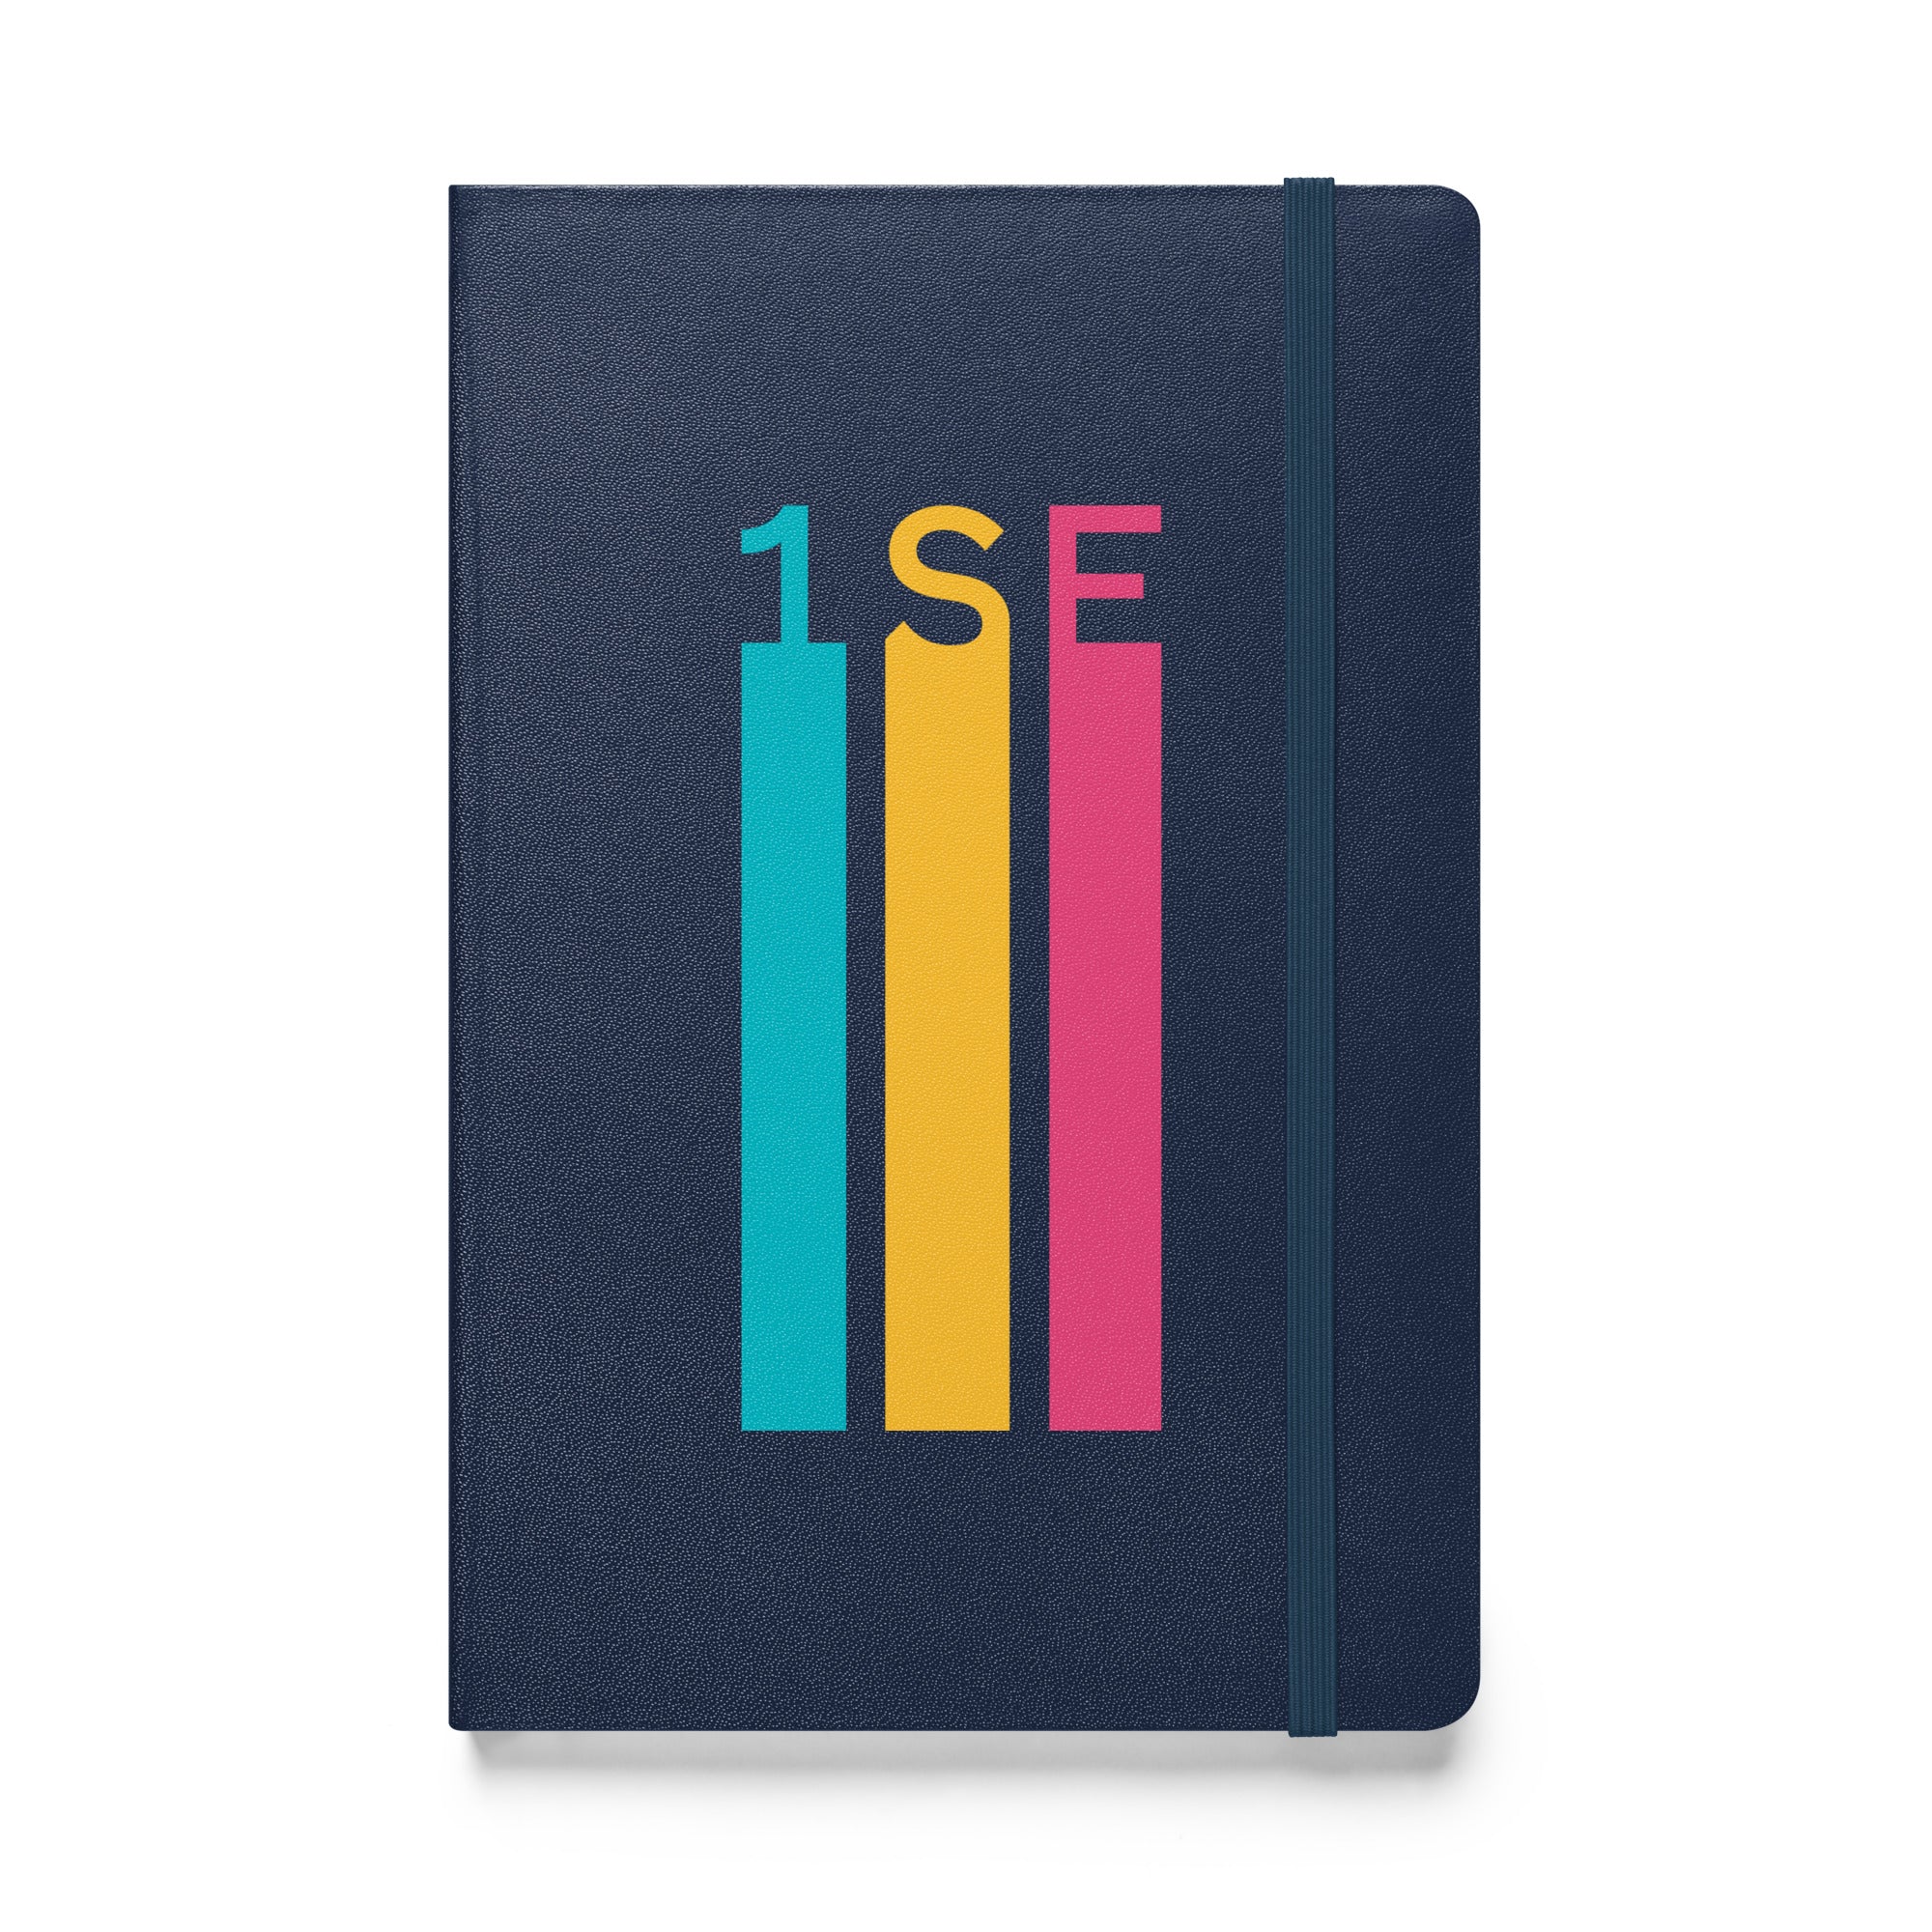 1SE Tri-Color Hardcover-Bound Journal